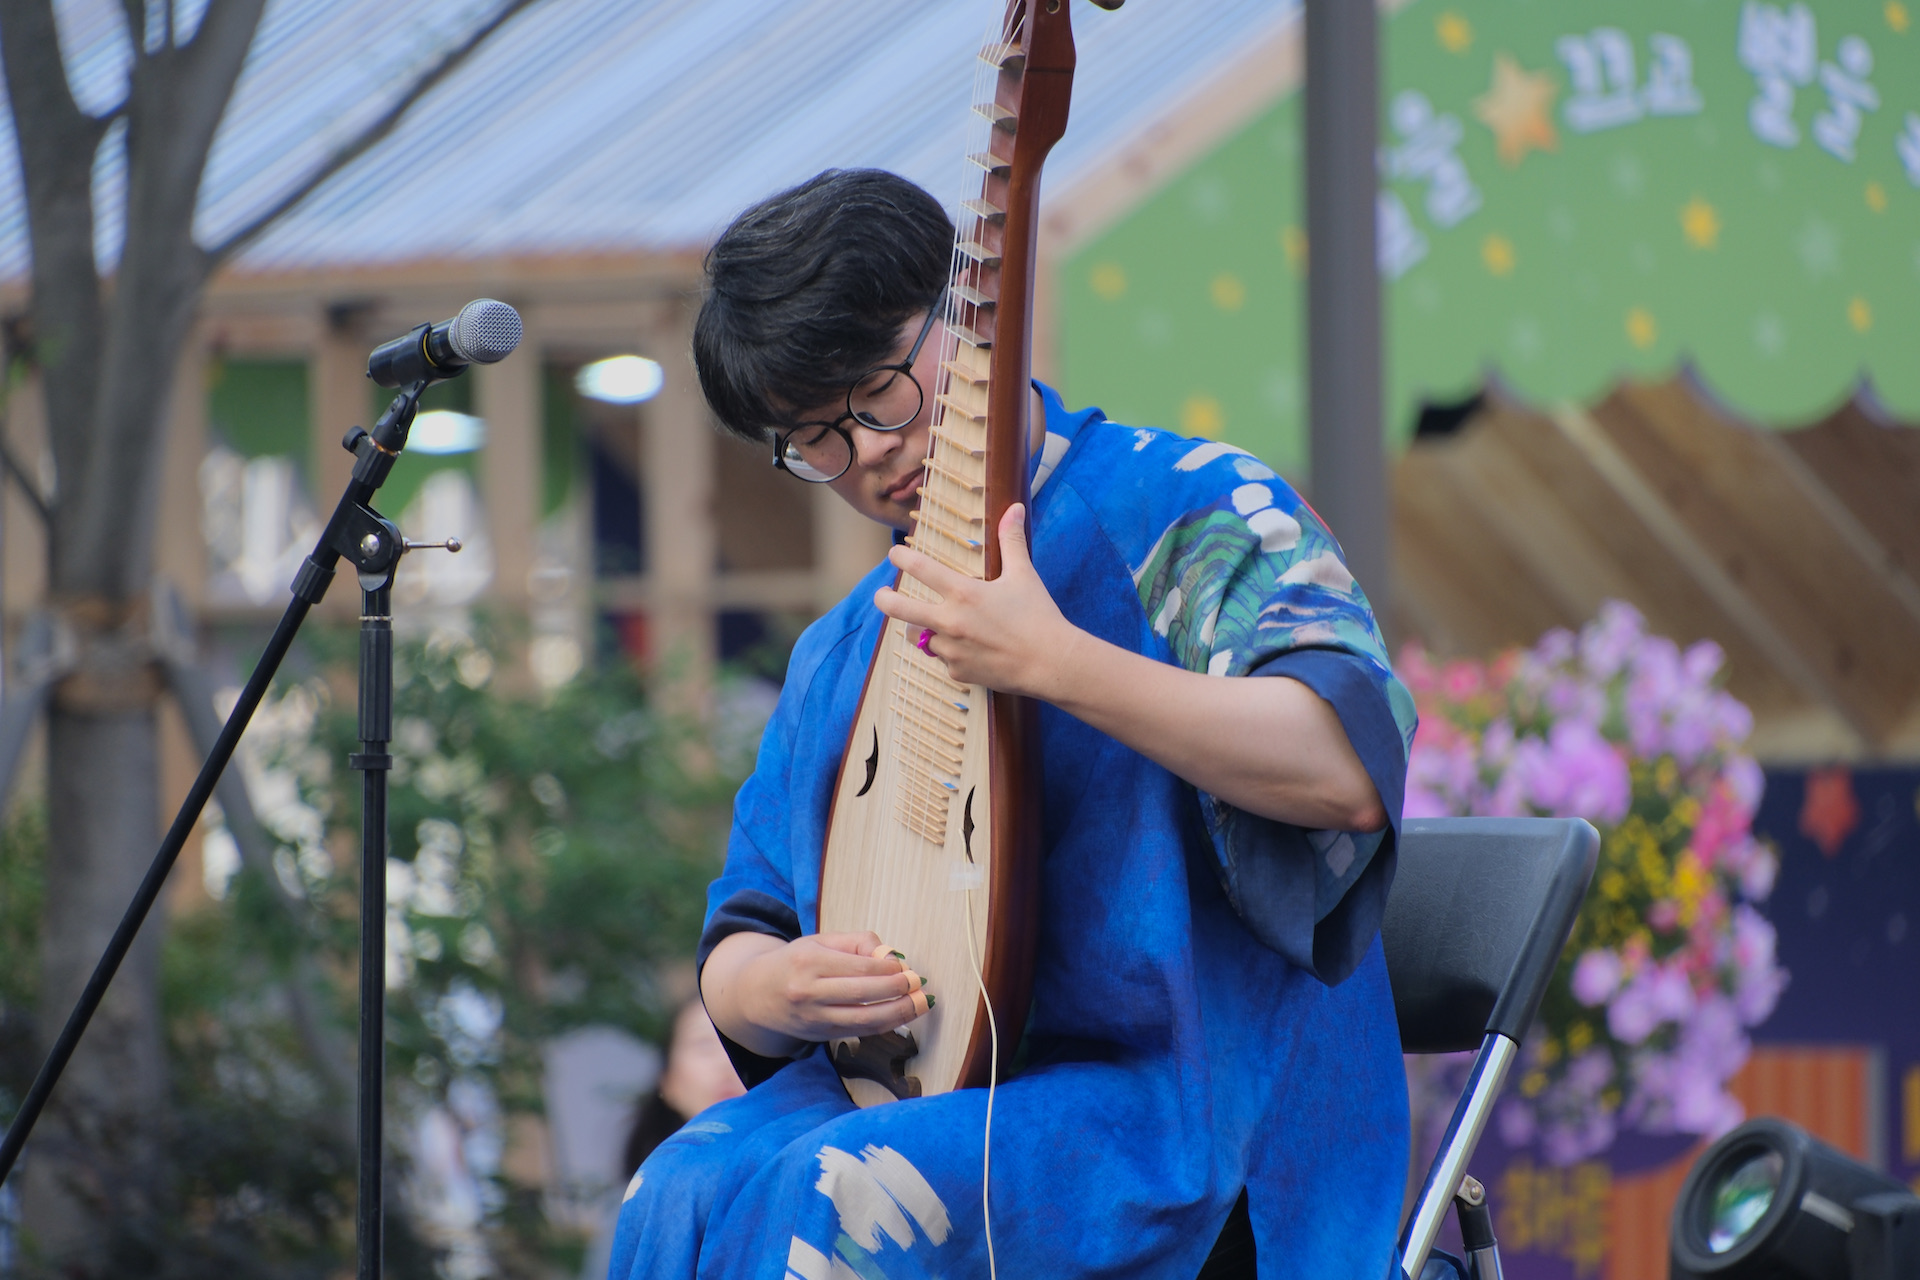 비파 연주자 마롱이 광화문광장에서 공연하는 모습 | 박재현/에포크타임스